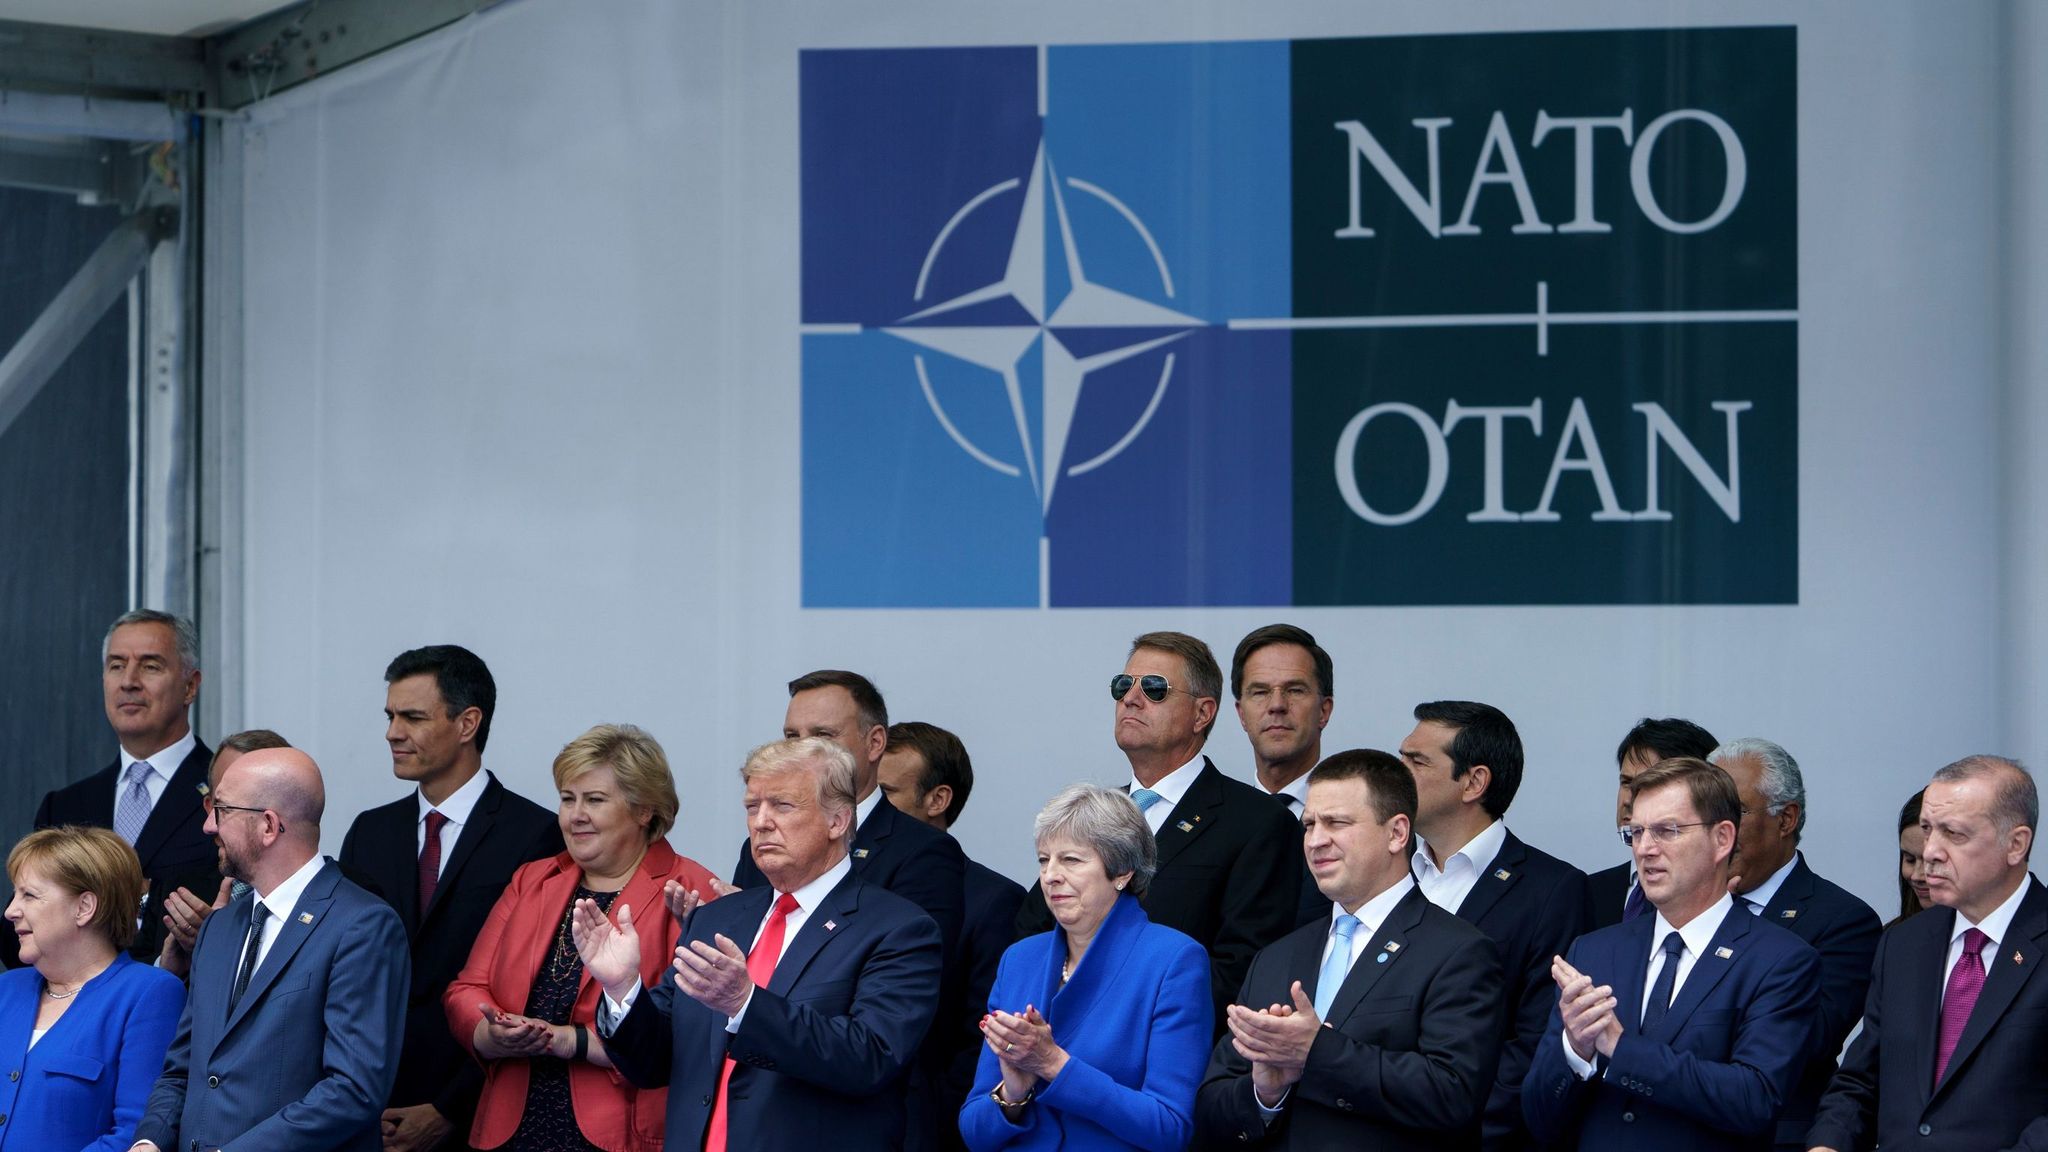 NATO OTAN. Саммит НАТО фото участников. NATO leaders. ООН И НАТО саммиты. Нато коррупция